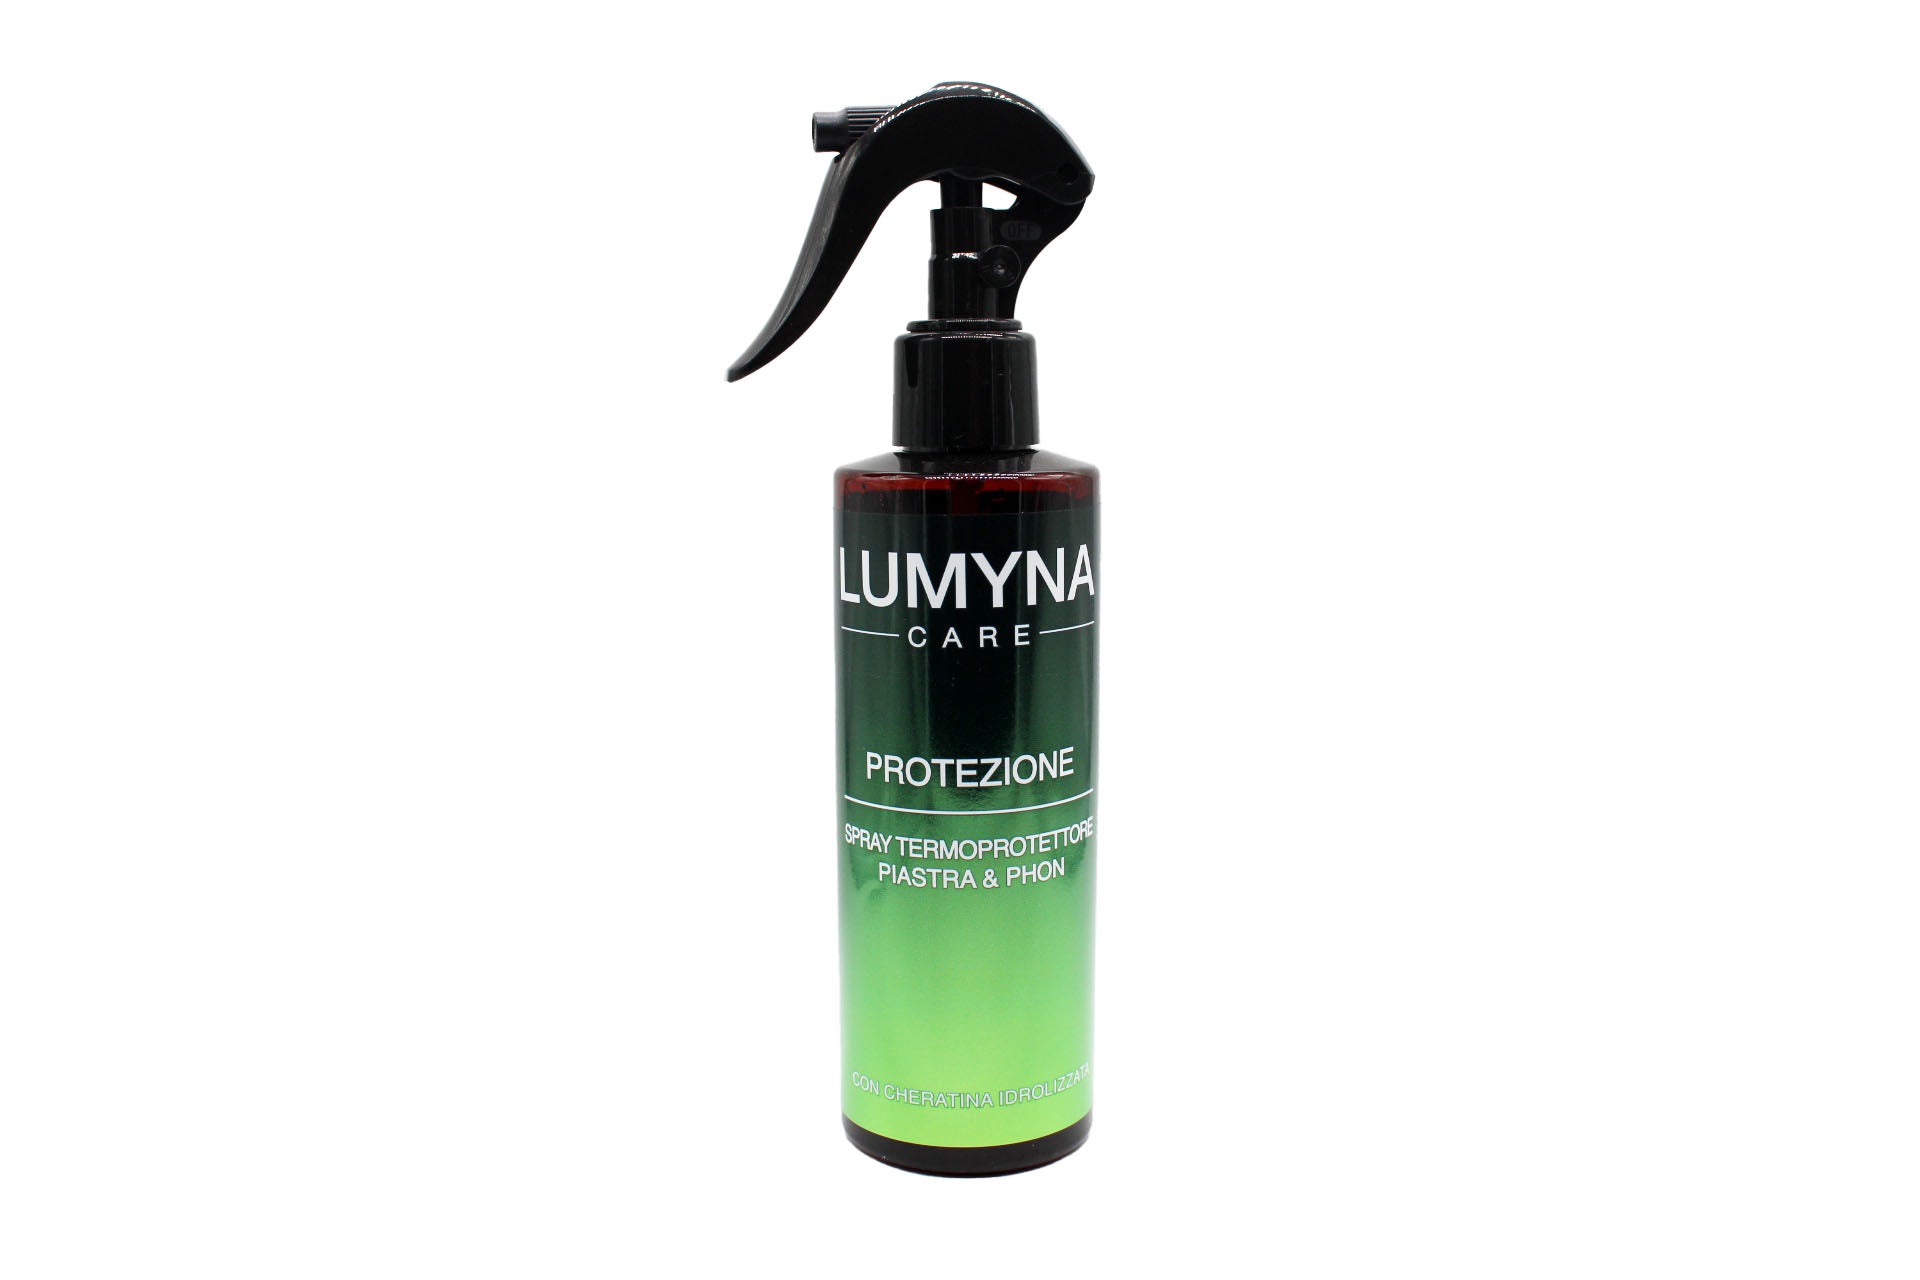 Lumyna Care Protezione Spray Termo Protettore Per Capelli Piastra & Ph –